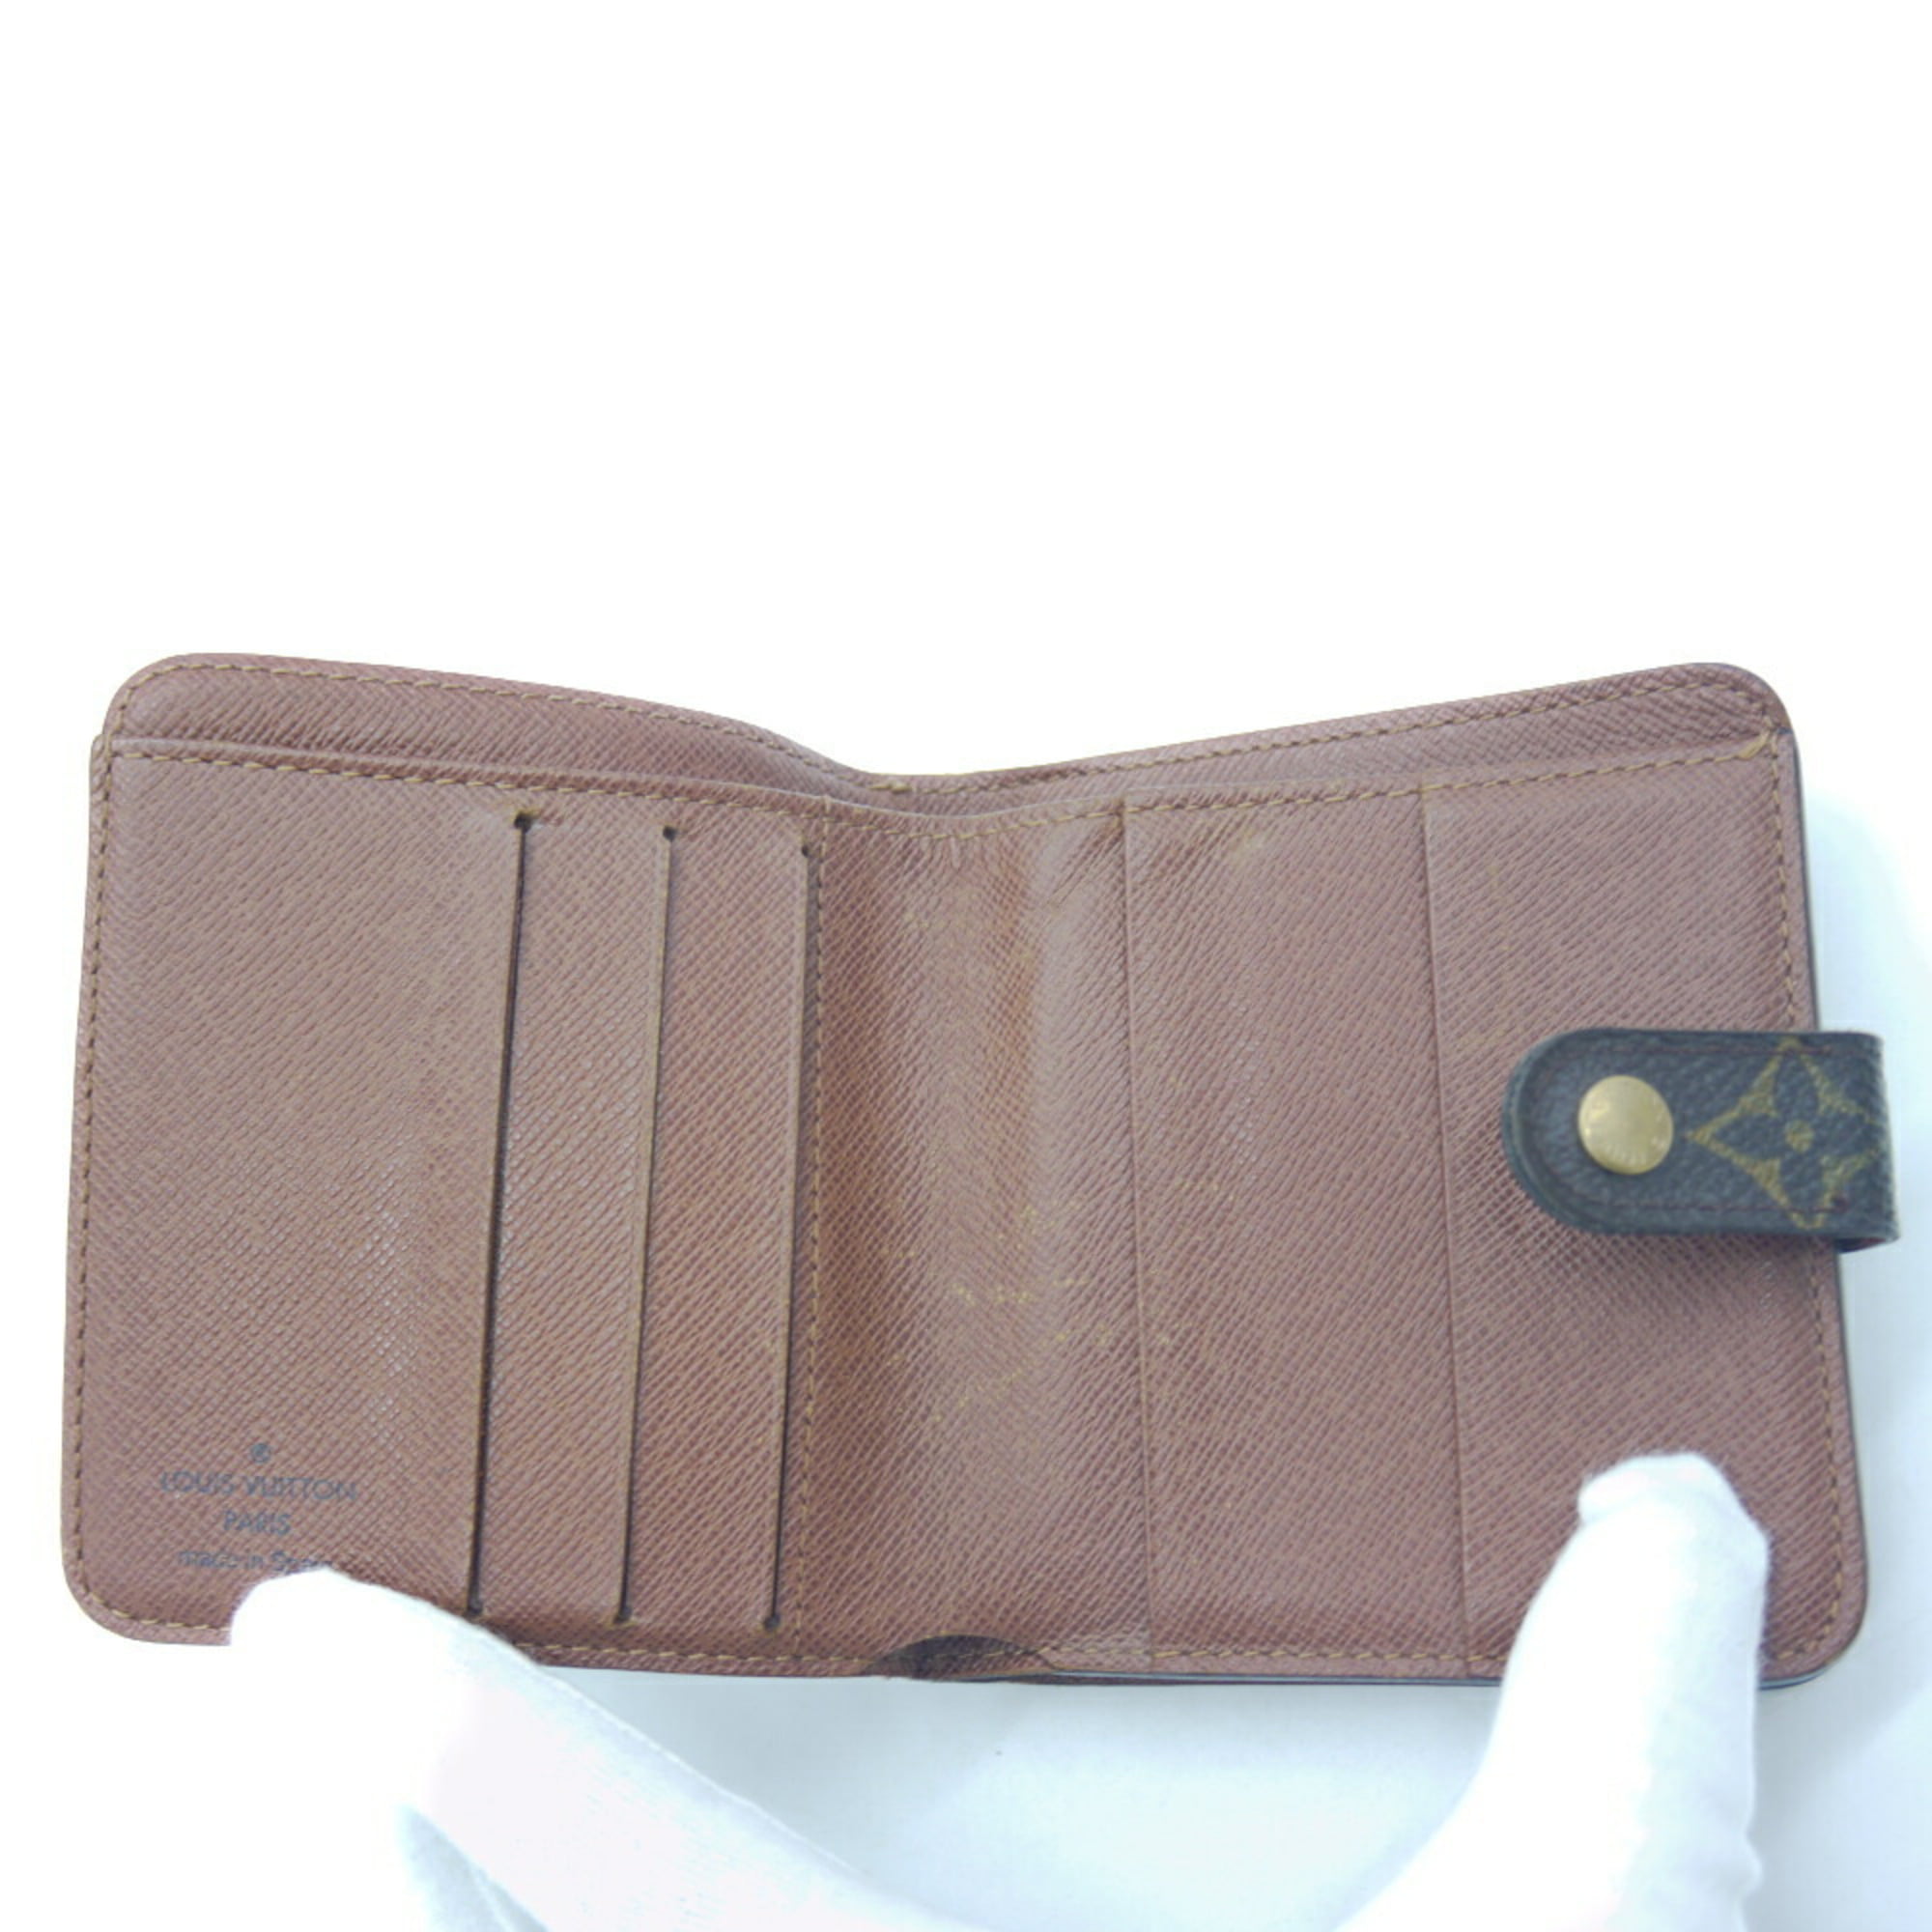 Louis Vuitton Compact Zip Wallet, Monogram